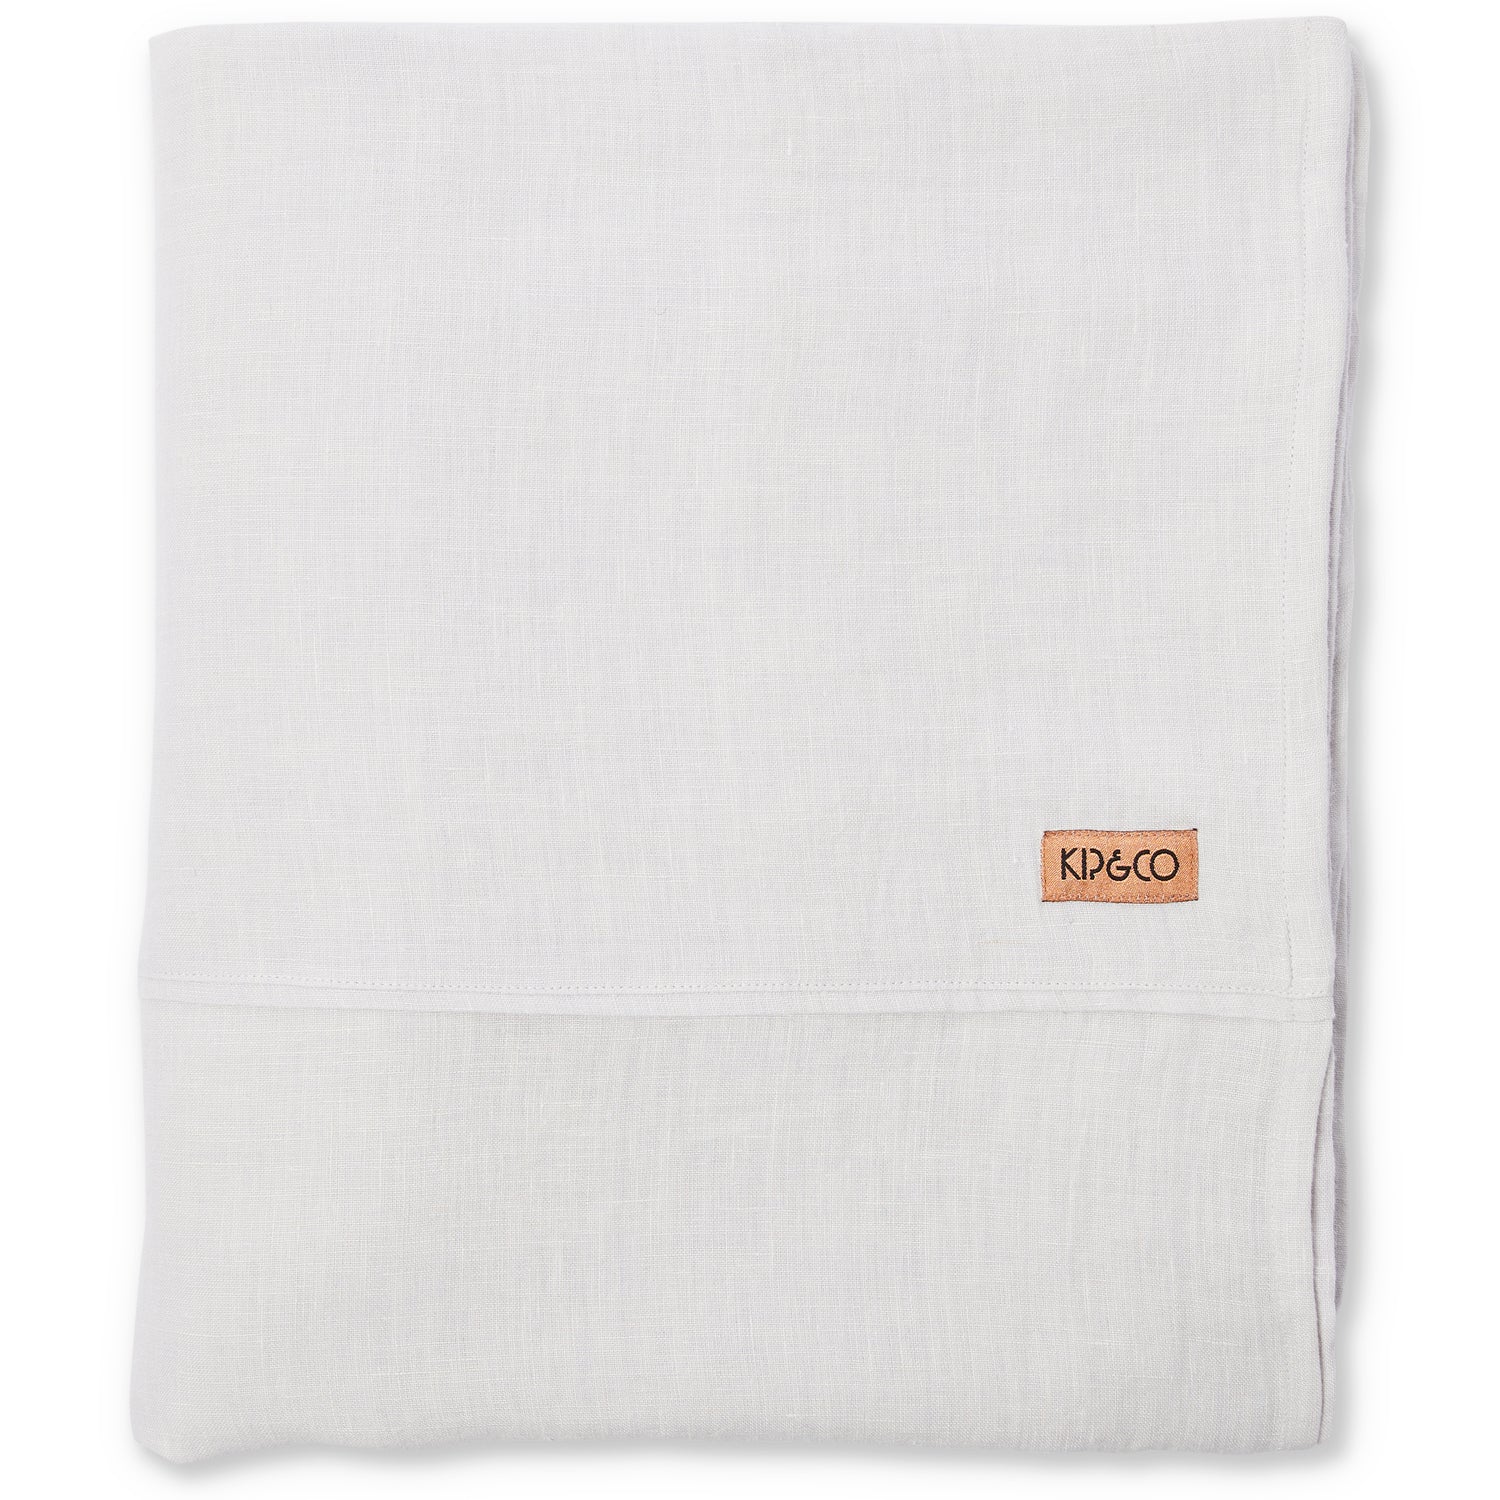 Staples Linen Flat Sheet - Soft Grey